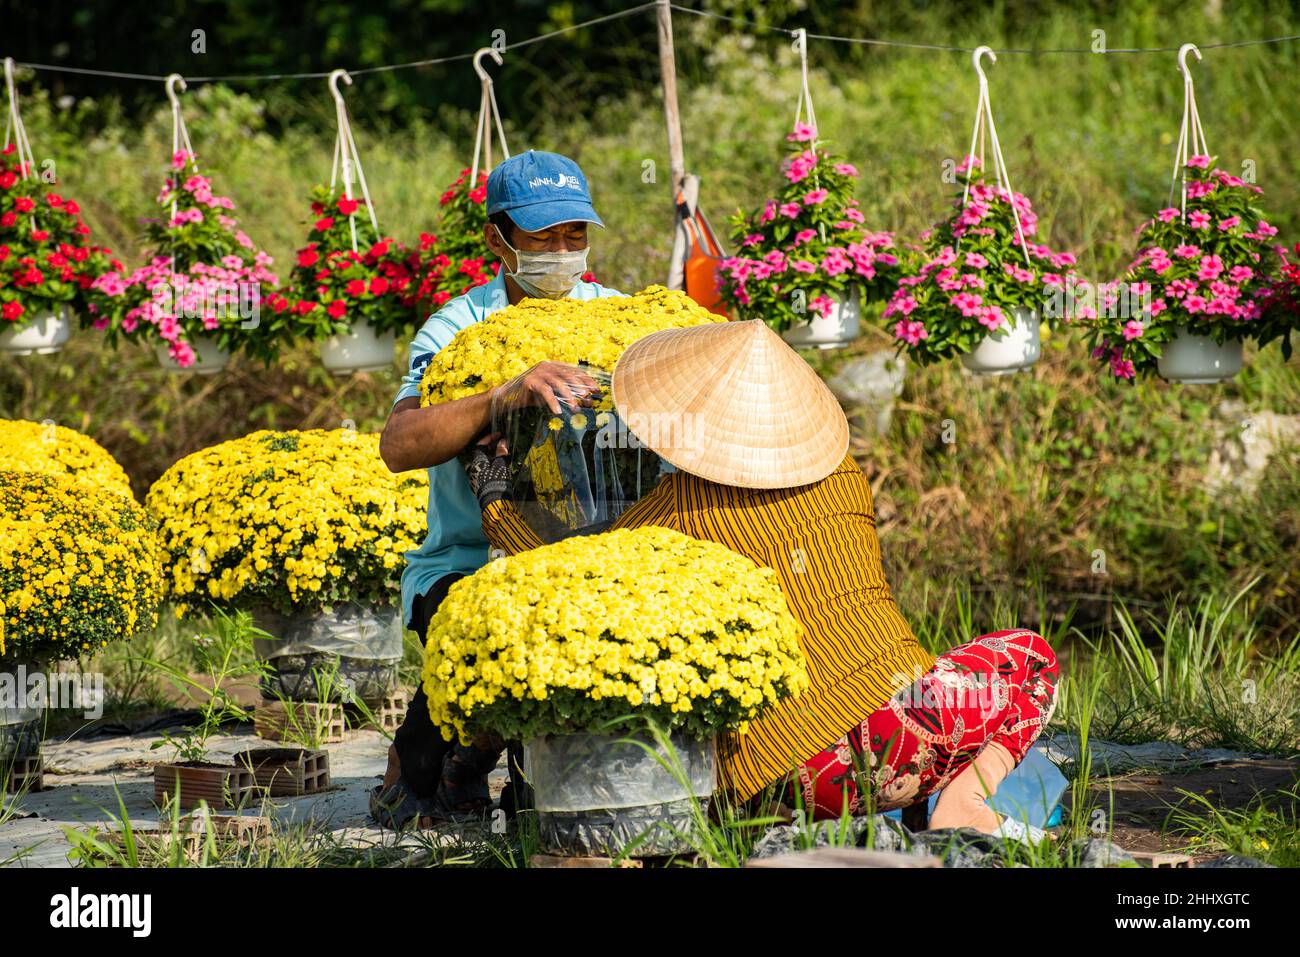 Lizenzfreie Bilder in hoher Qualität. Die Bauern kümmern sich um Blumenkörbe, um sich während des vietnamesischen Neujahrsfestes für den Verkauf vorzubereiten Stockfoto